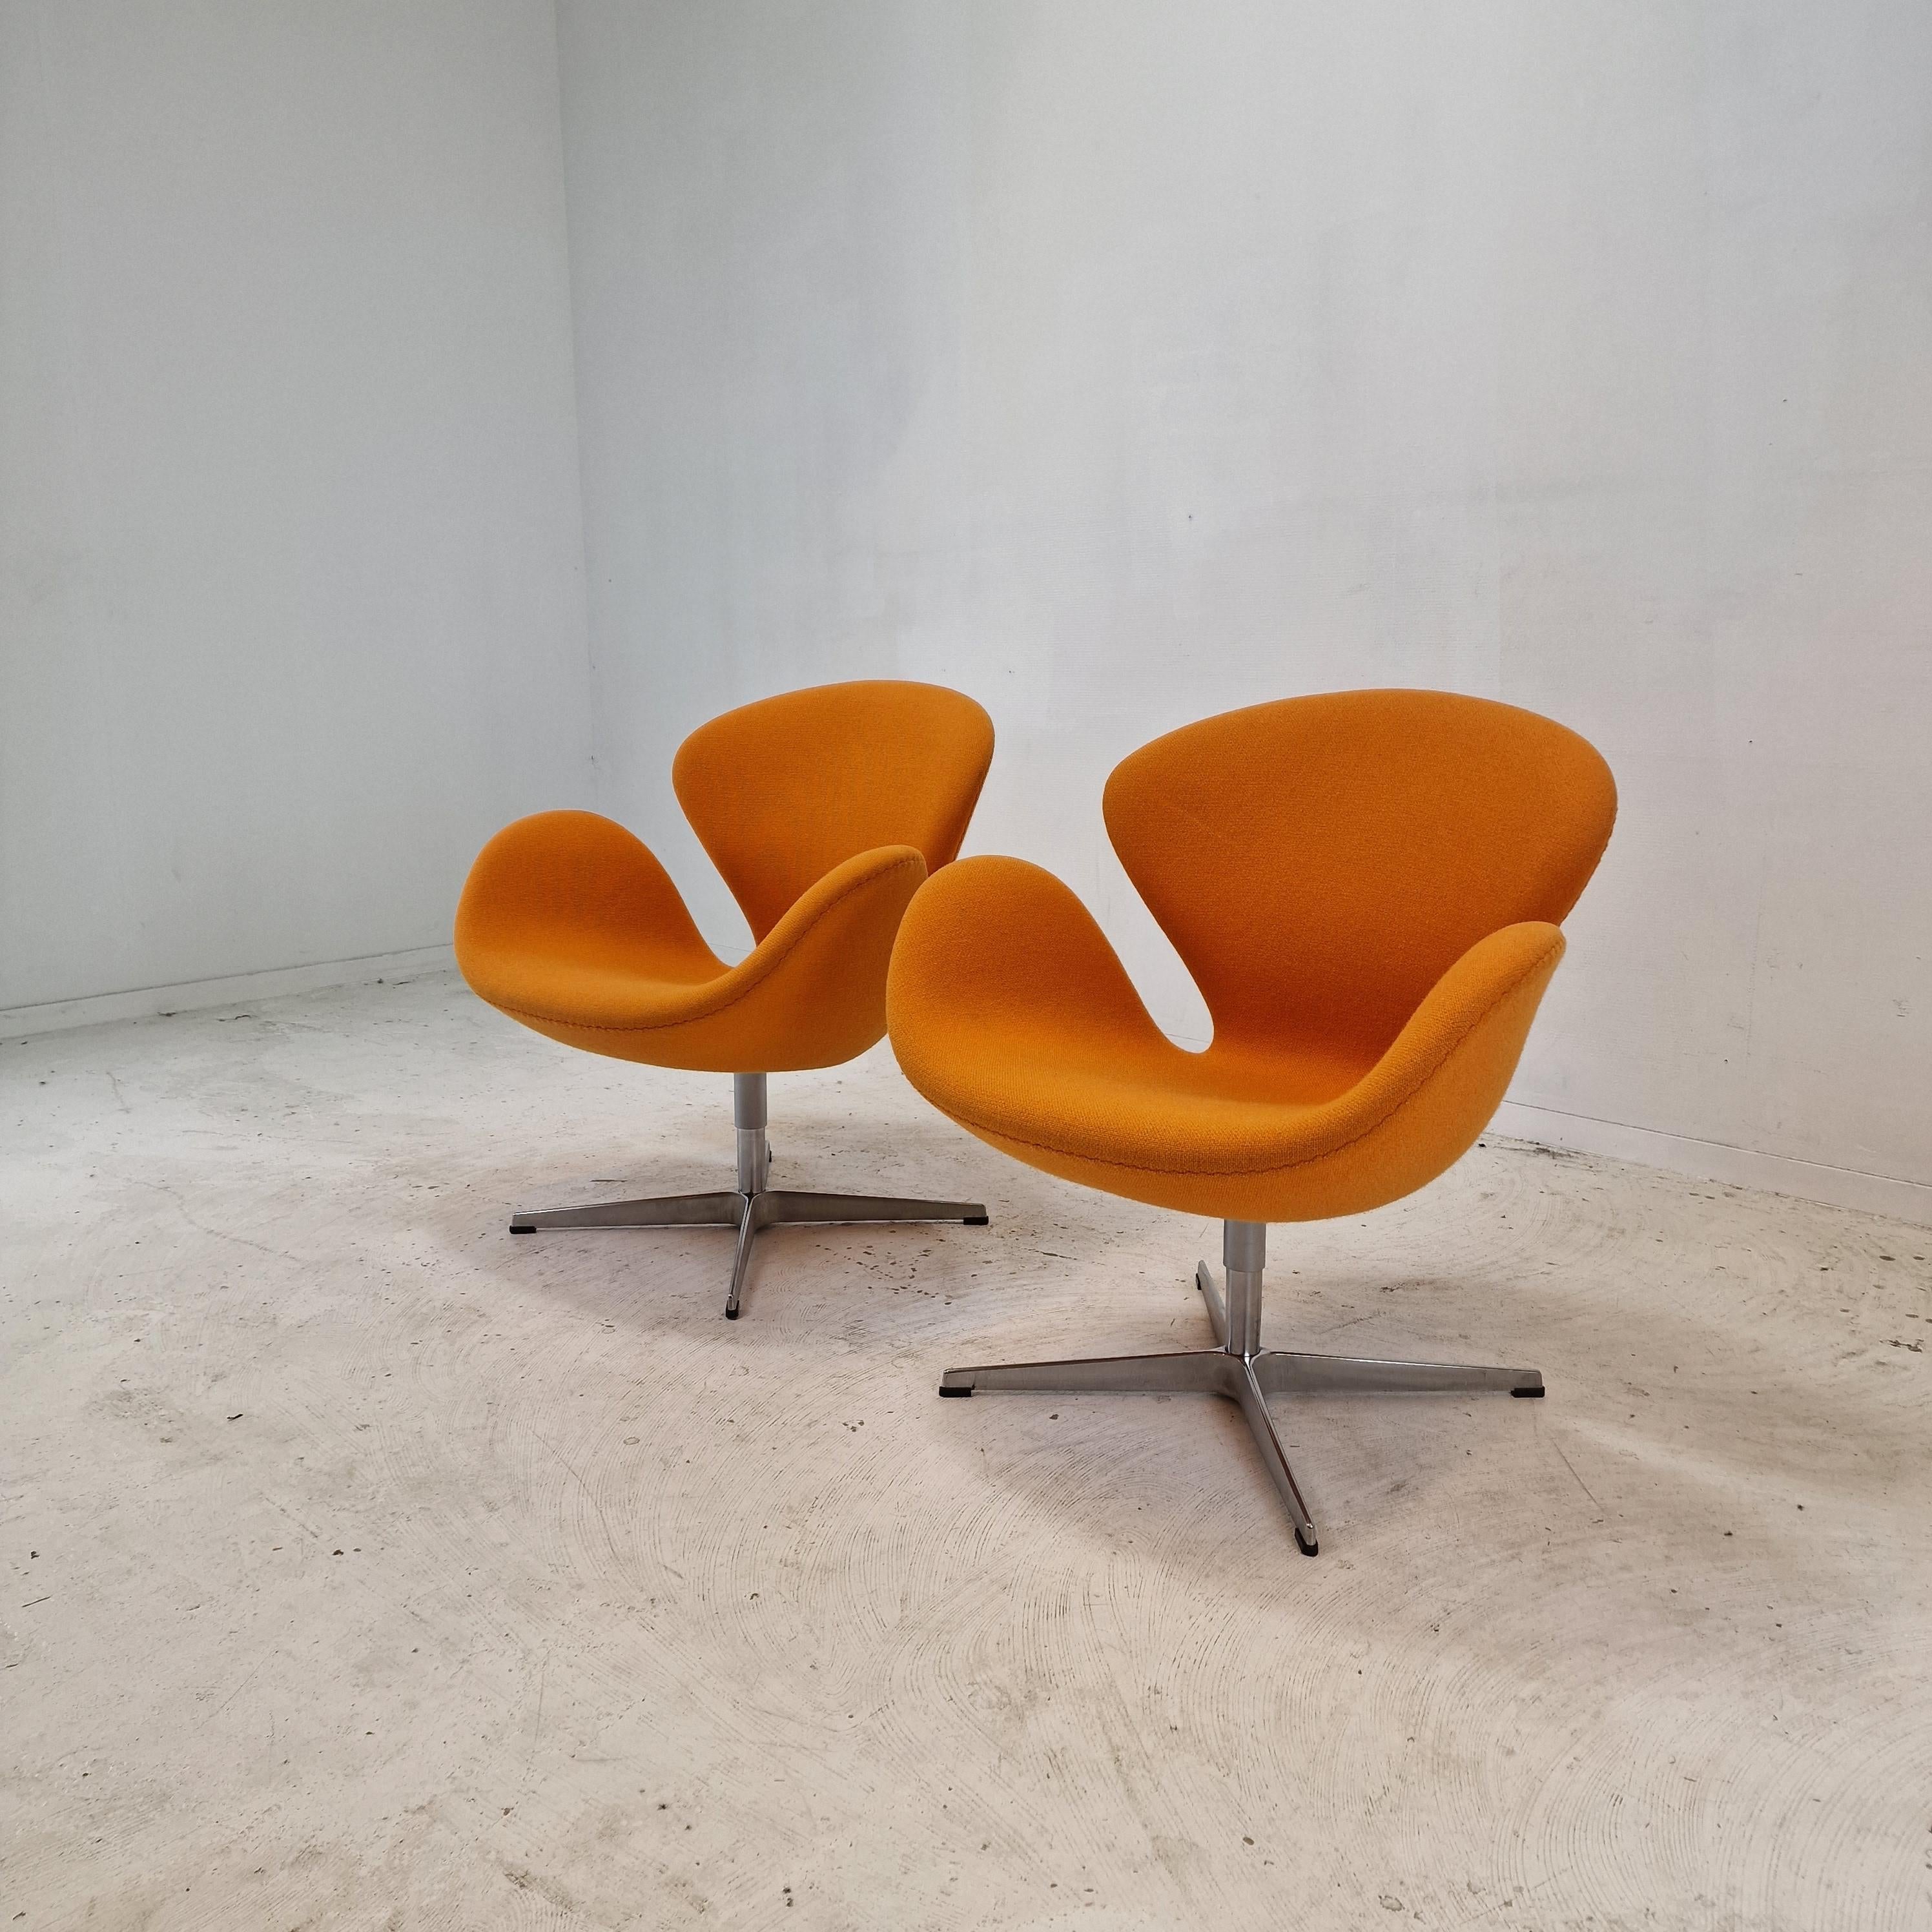 Schöner Satz von zwei originalen Schwanenstühlen. 

Diese Schwan-Stühle wurden in den 1950er Jahren von Arne Jacobsen für das SAS Hotel in Kopenhagen entworfen und von Fritz Hansen hergestellt.

Die Stühle sind mit dem hochwertigen Wollstoff Kvadrat